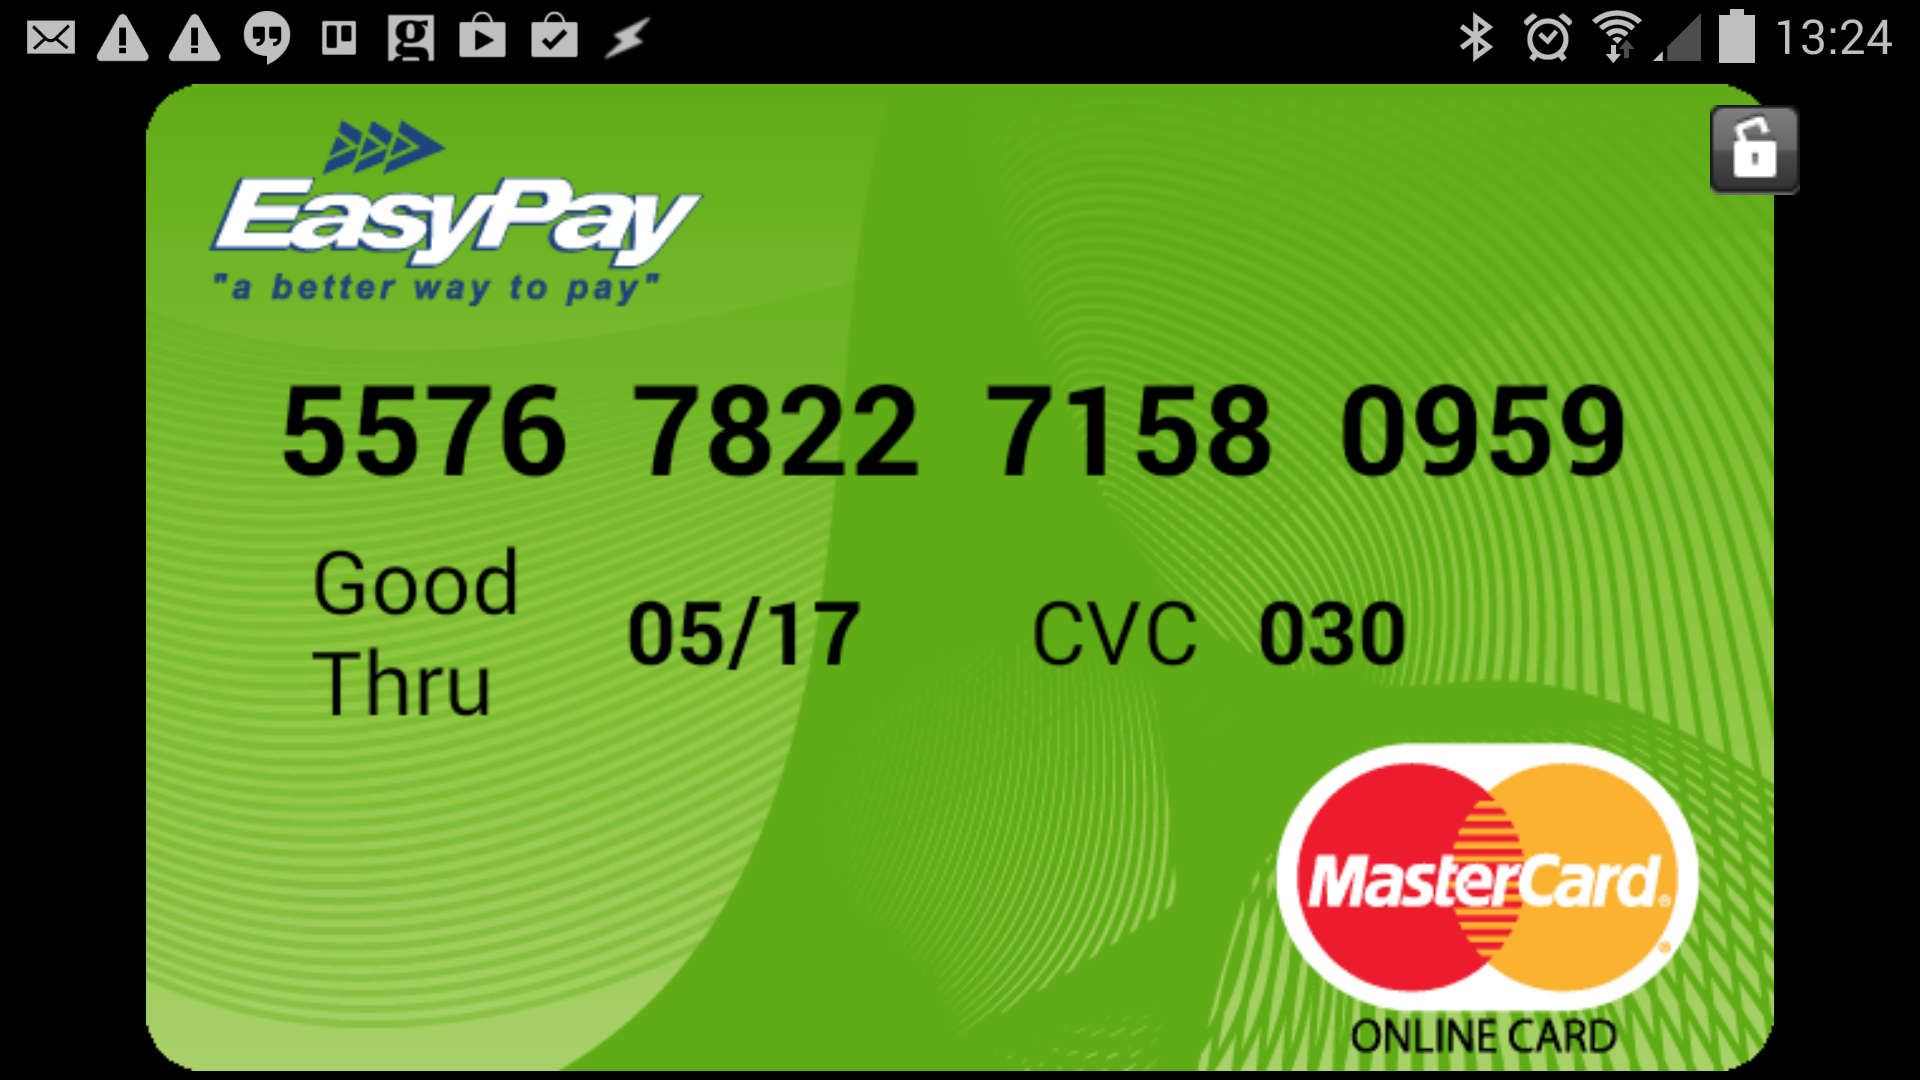 Single Use Sa Credit Card App Makes Payments Private Brings Bank